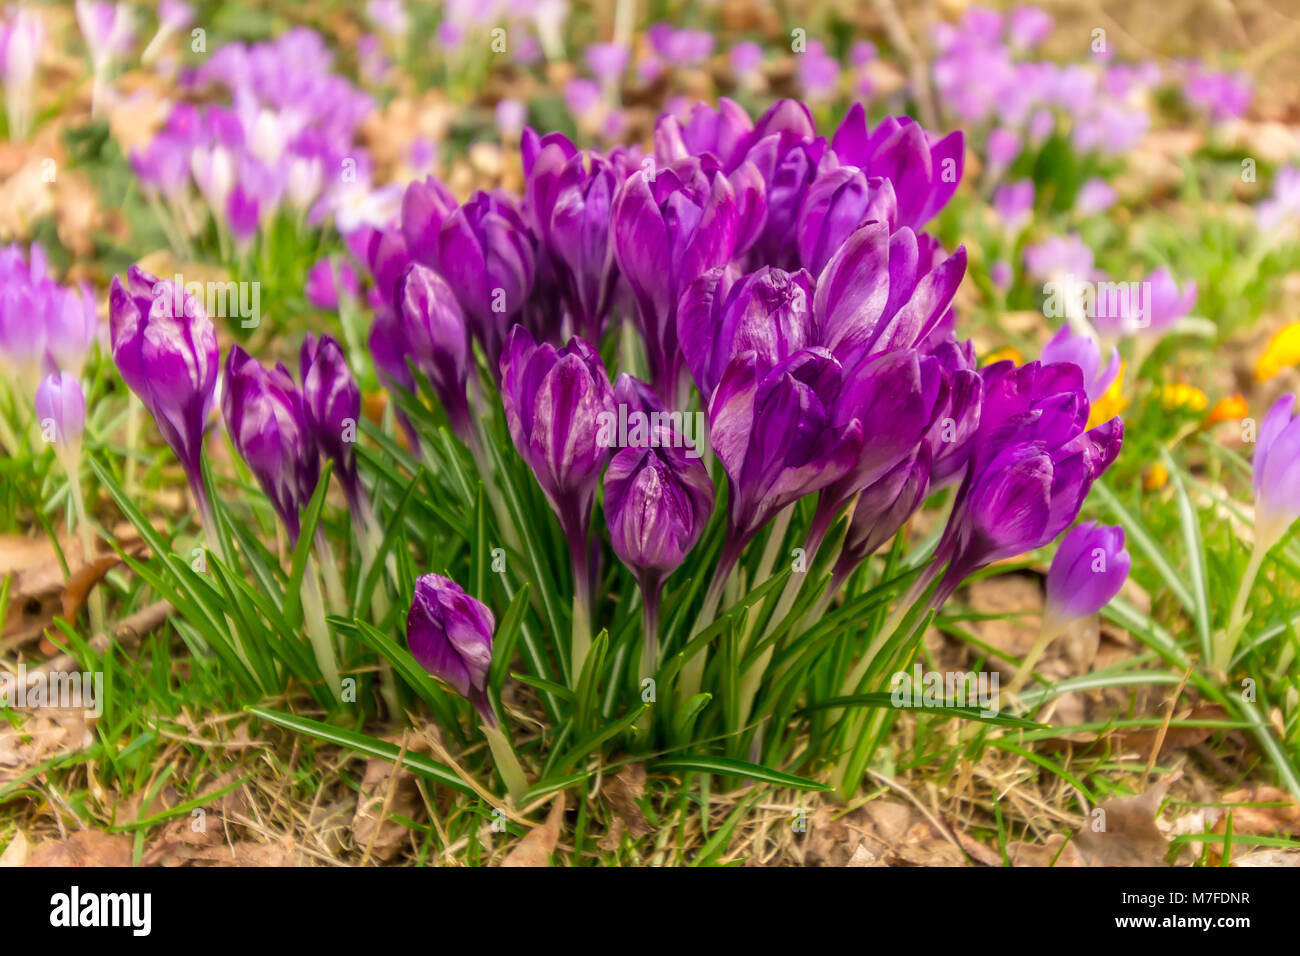 Crocus, plural Krokusse oder Croci ist eine Gattung von Blütenpflanzen in der Iris-Familie. Ein einzelnes Crocus, ein paar Krokusse, eine Wiese voller Krokusse Stockfoto